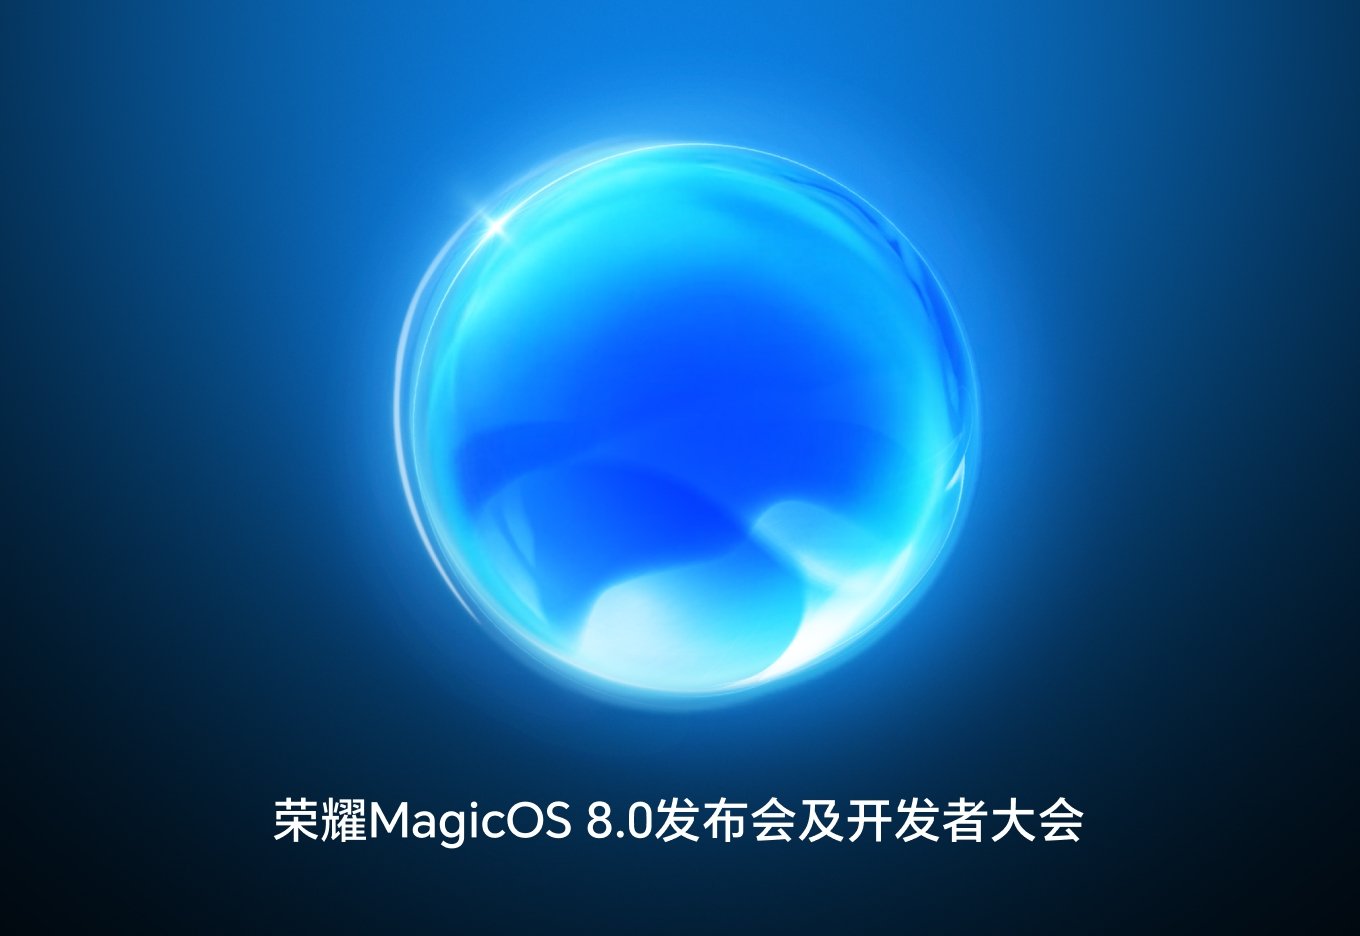 Honor revela novo MagicOS 8.0 focado em IA